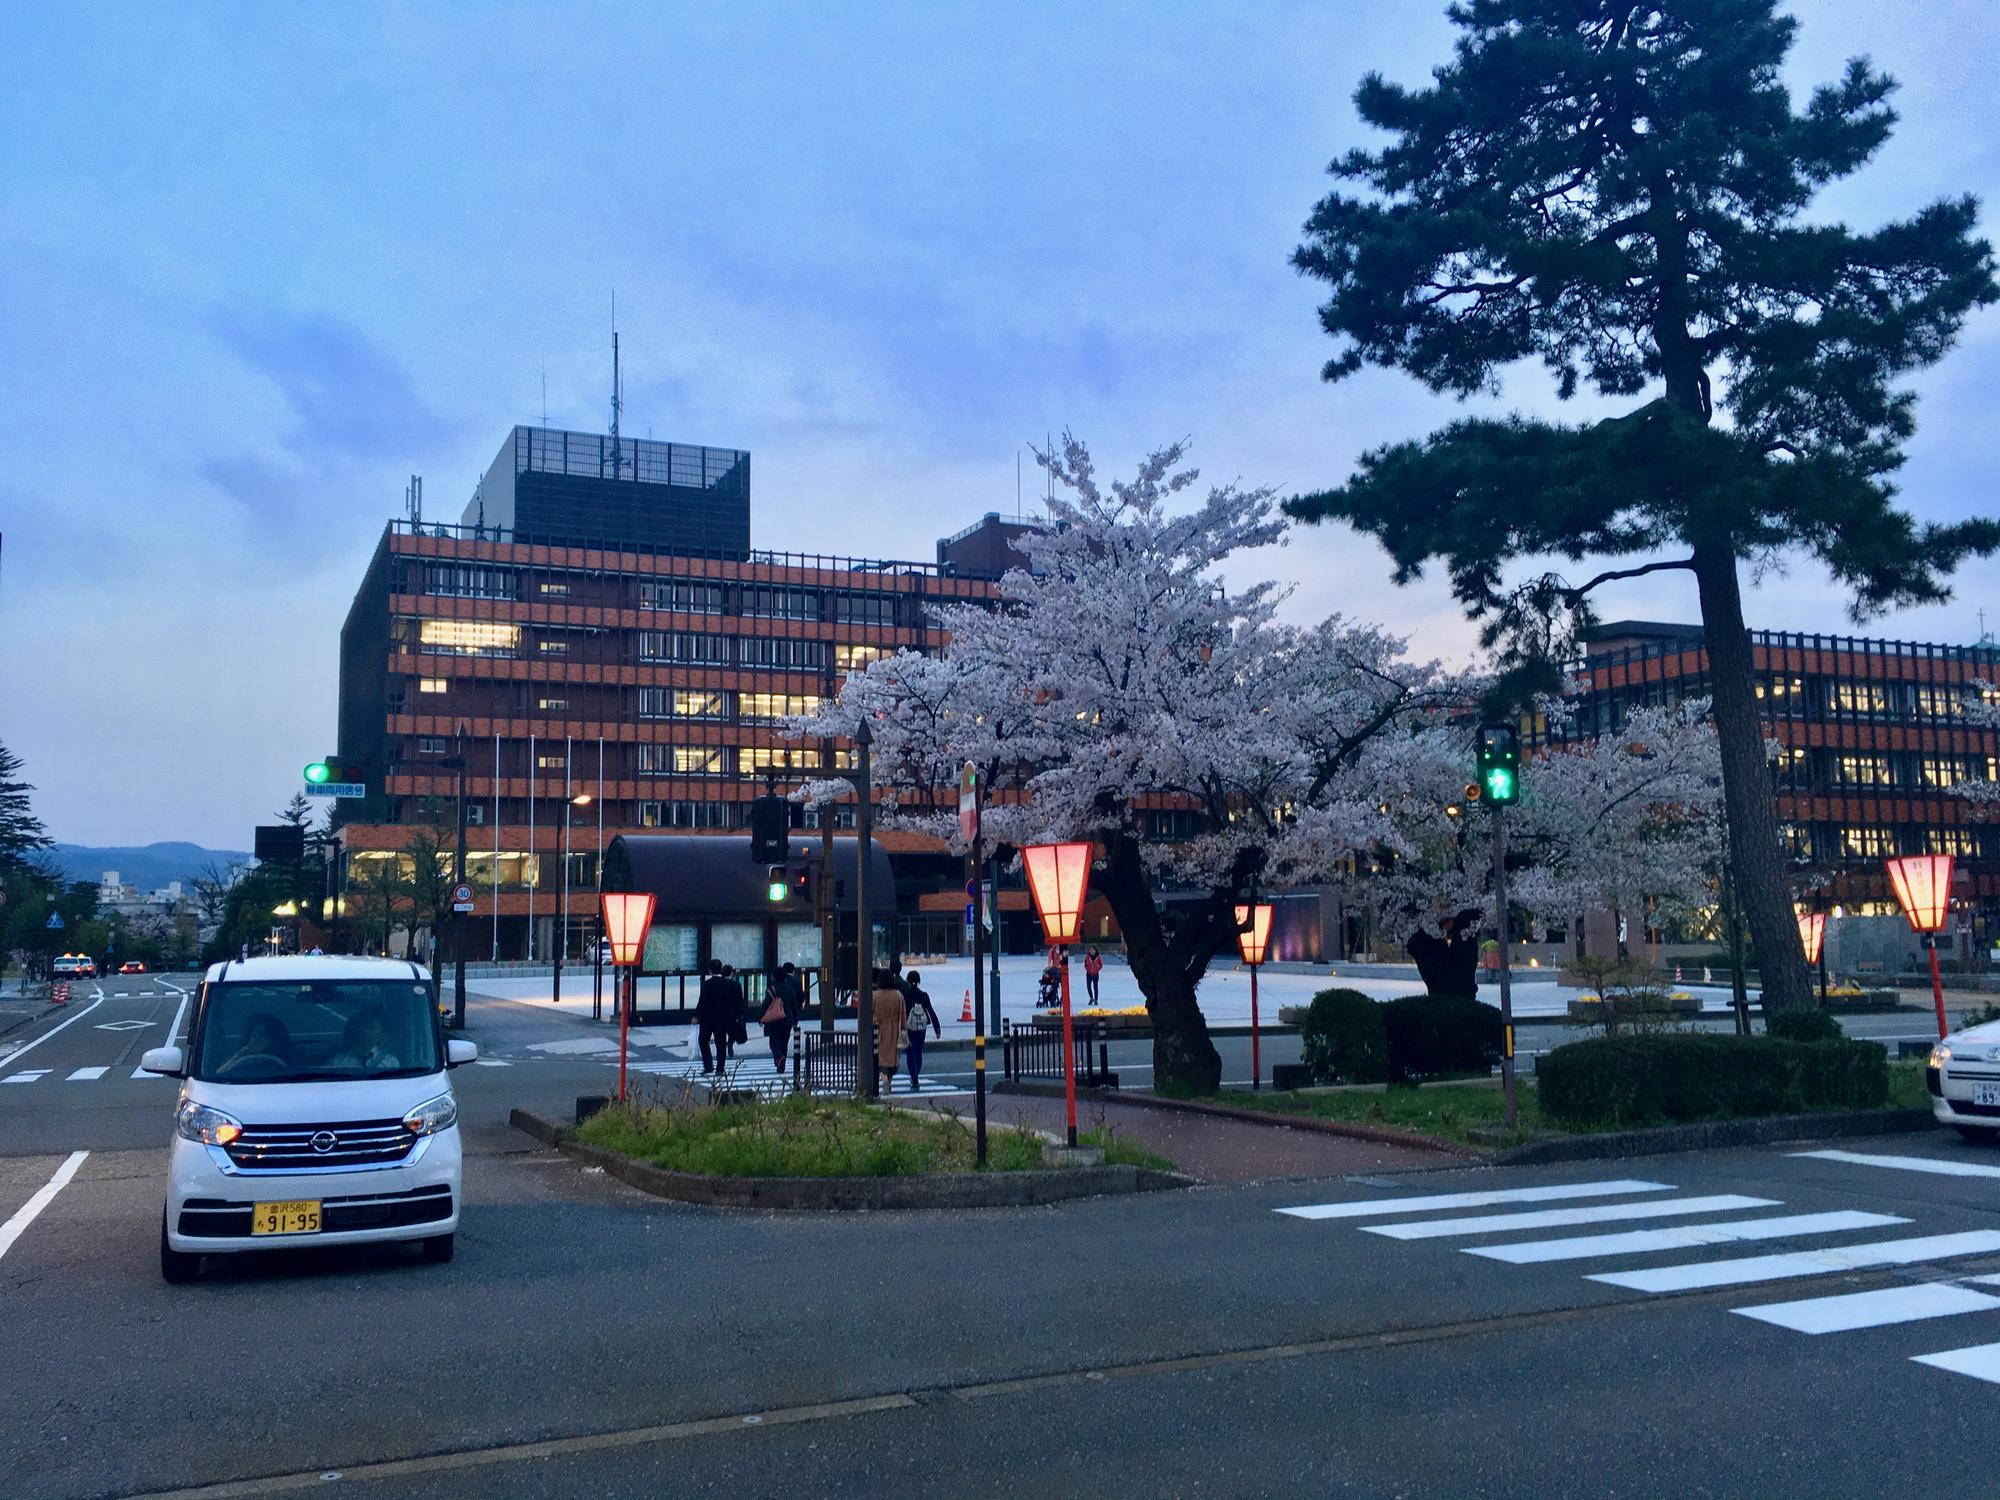 🇯🇵 Kanazawa, Japan, April 2017.